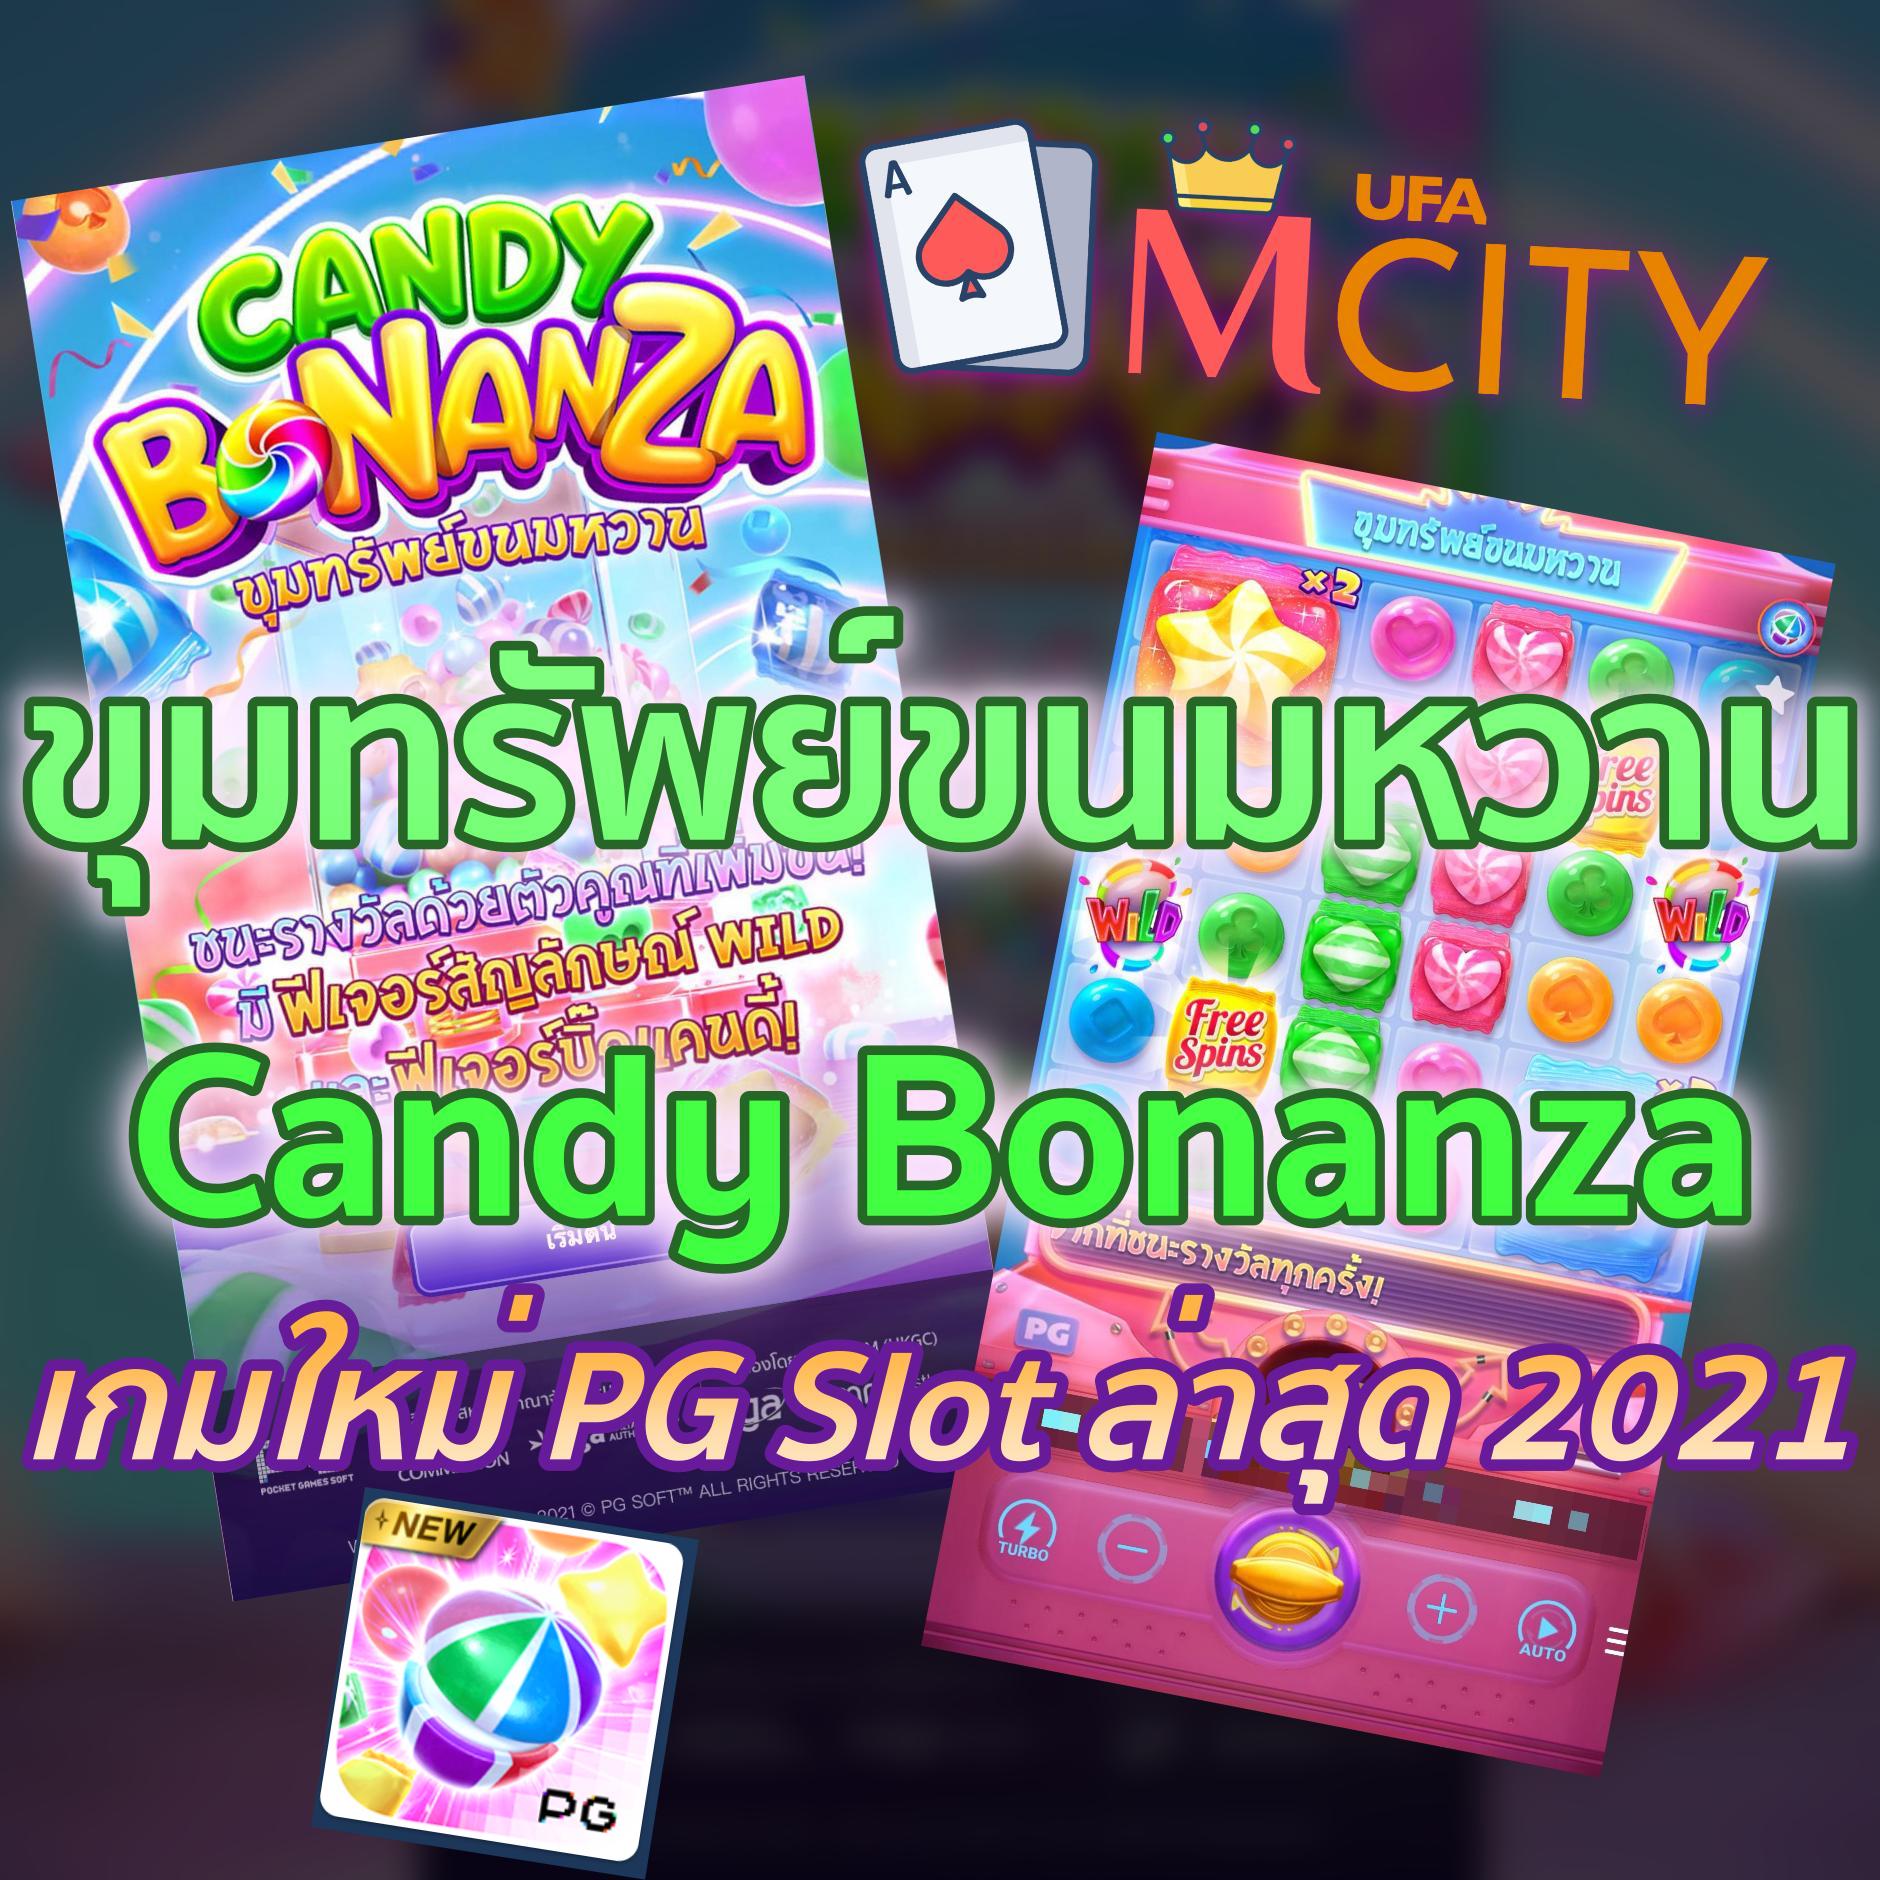 ขุมทรัพย์ขนมหวาน Candy Bonanza